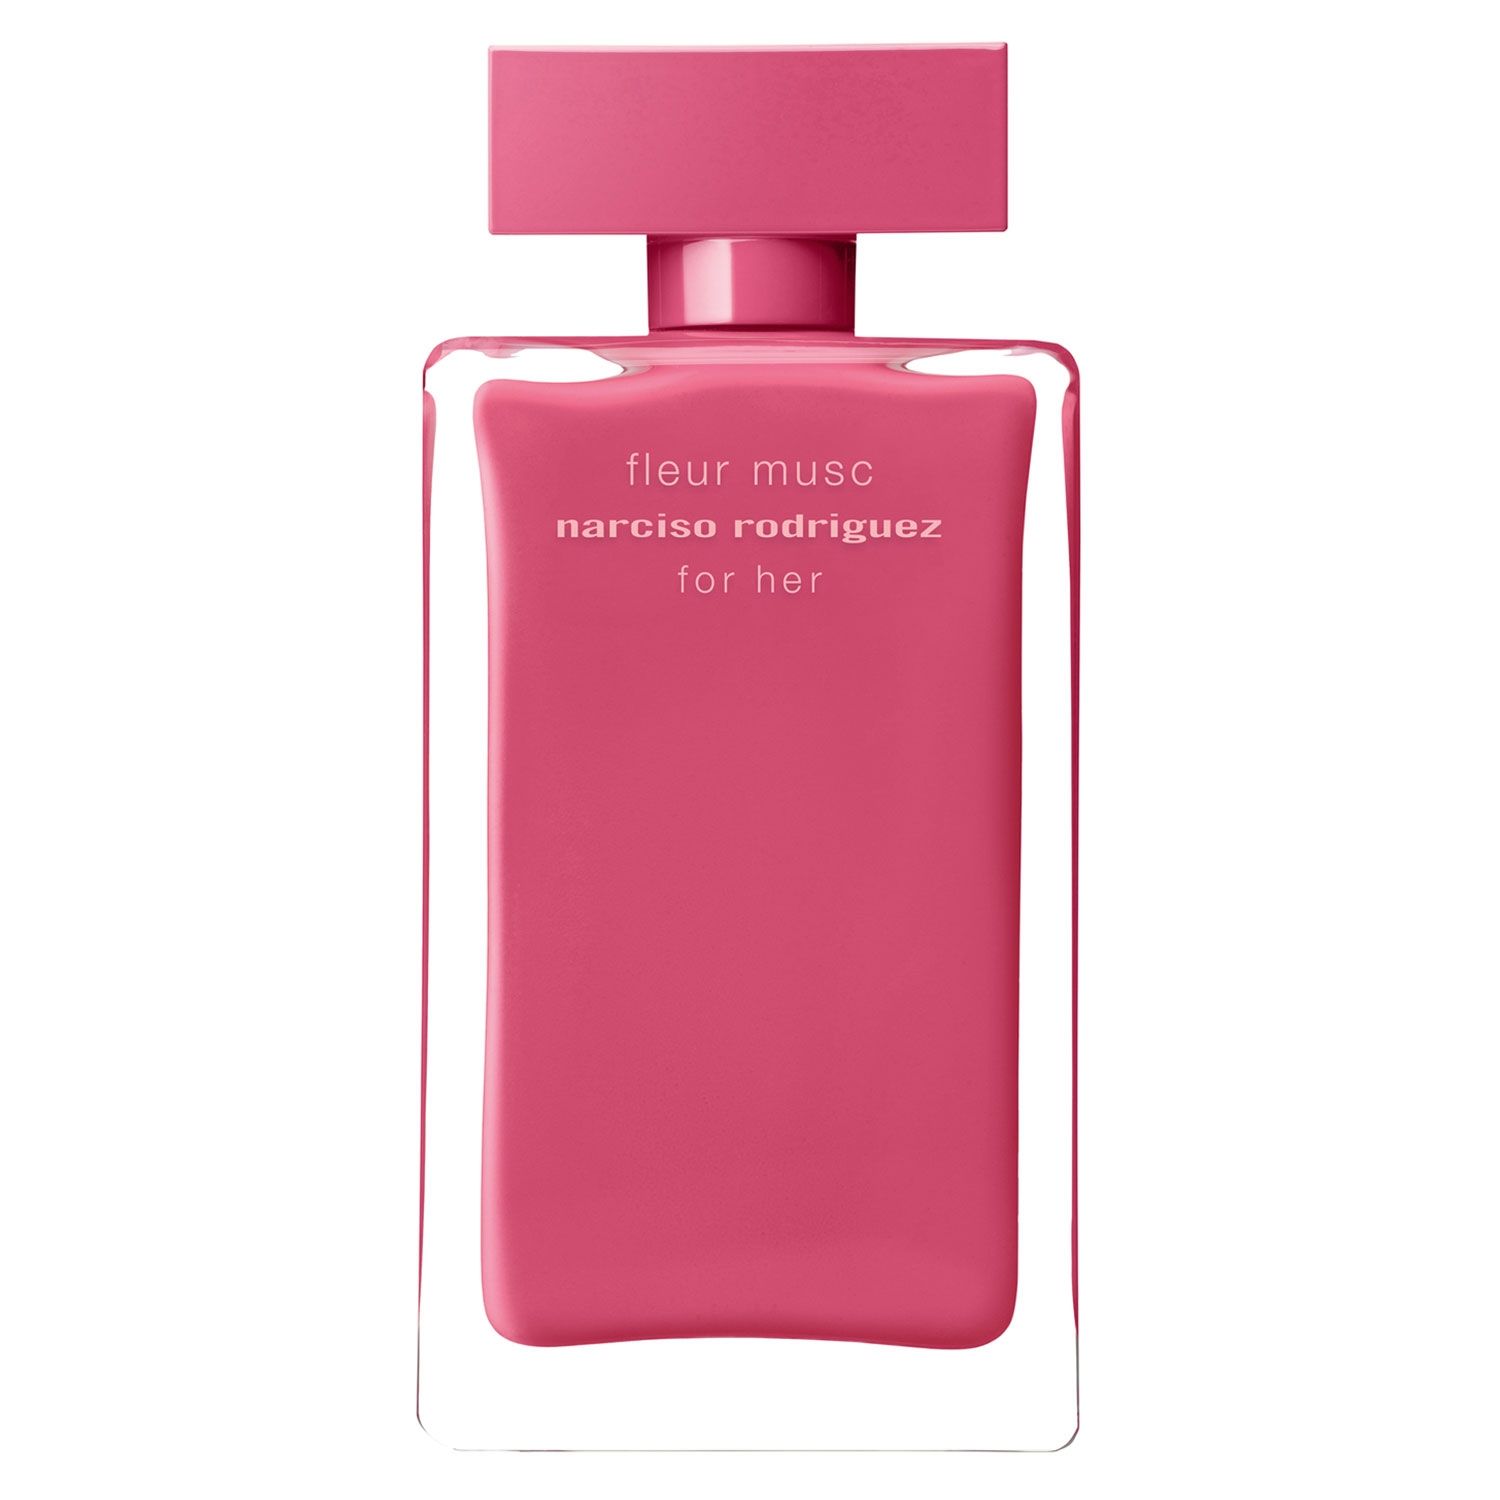 Produktbild von Narciso - For Her Fleur Musc Eau de Parfum